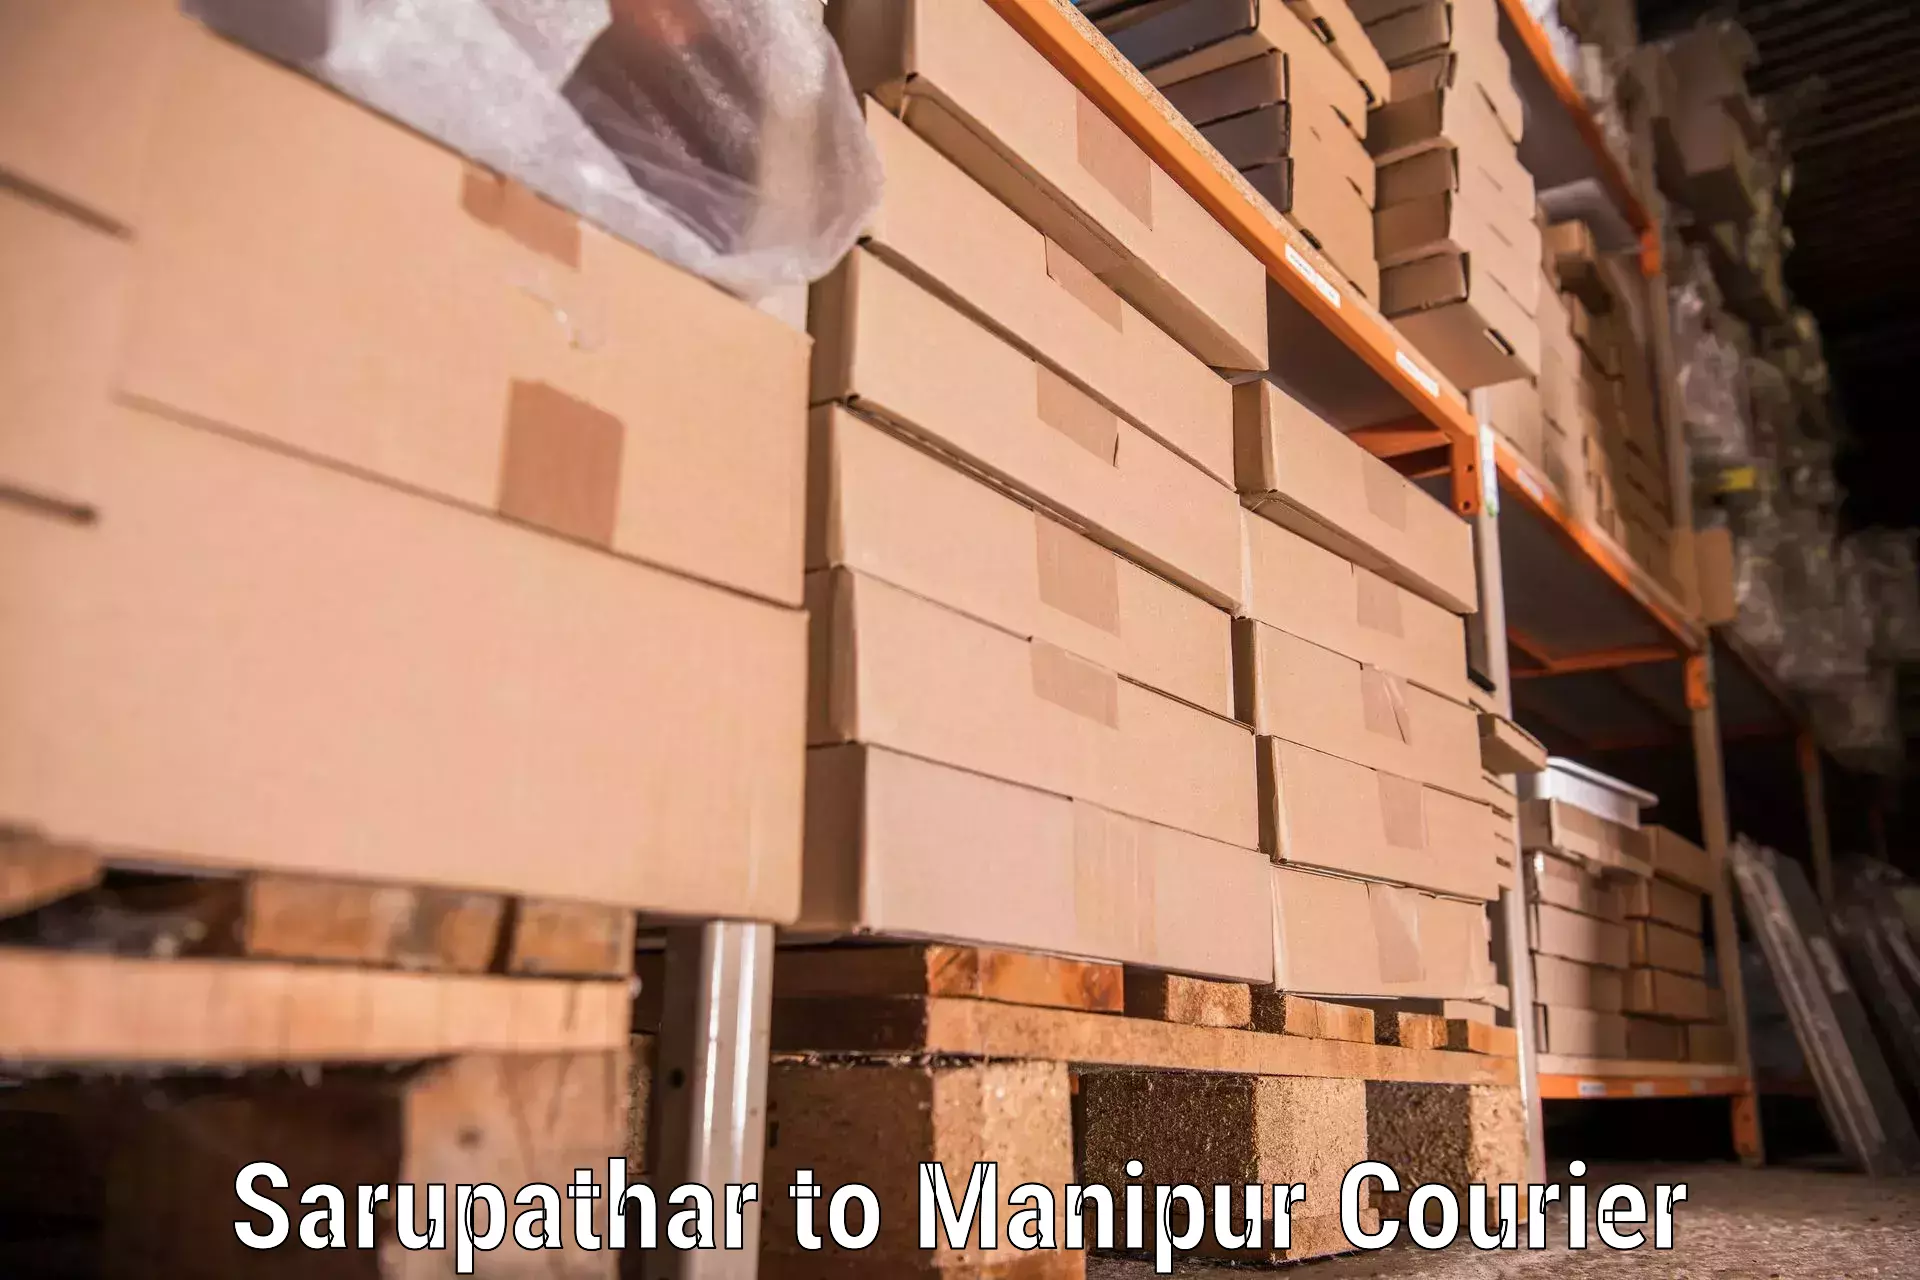 Moving and handling services Sarupathar to Moirang